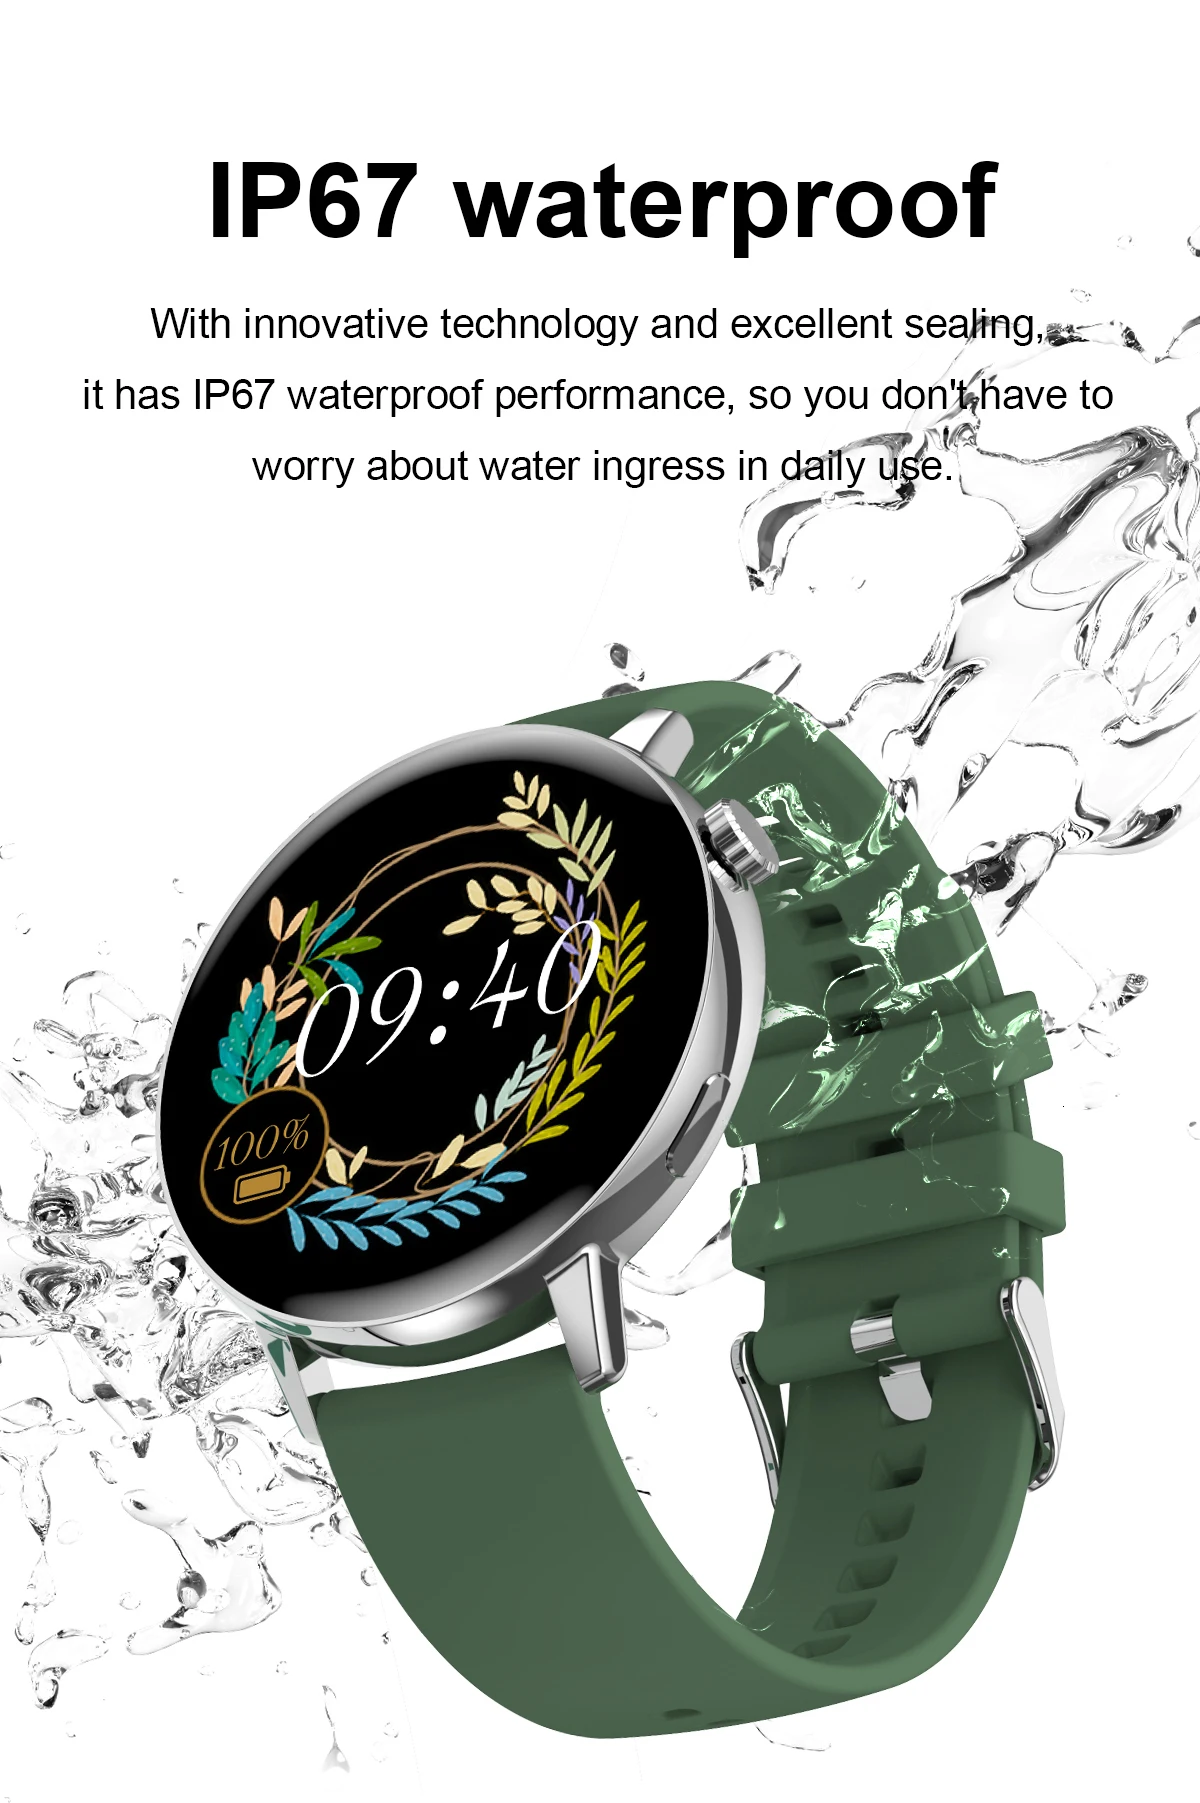 smart watch | smart watch android | smart watch apple | smart watch iOS | best smartwatch for women | women smart watch | android smart watches for women | smart watch women android |smart watch waterproof